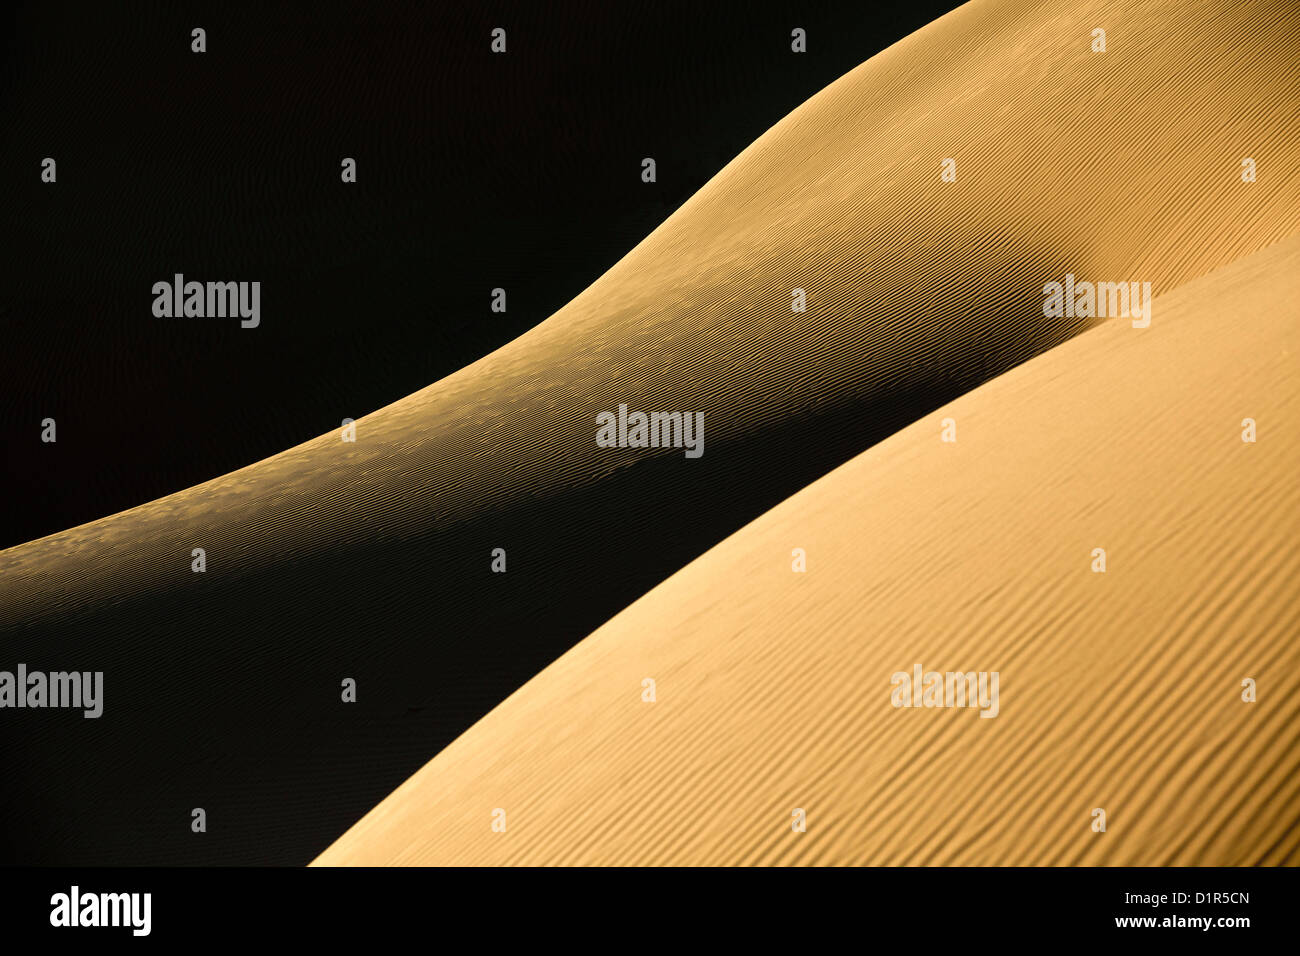 Il Marocco, M'Hamid, Erg Chigaga dune di sabbia. Deserto del Sahara. Dettaglio ripple marks. Foto Stock